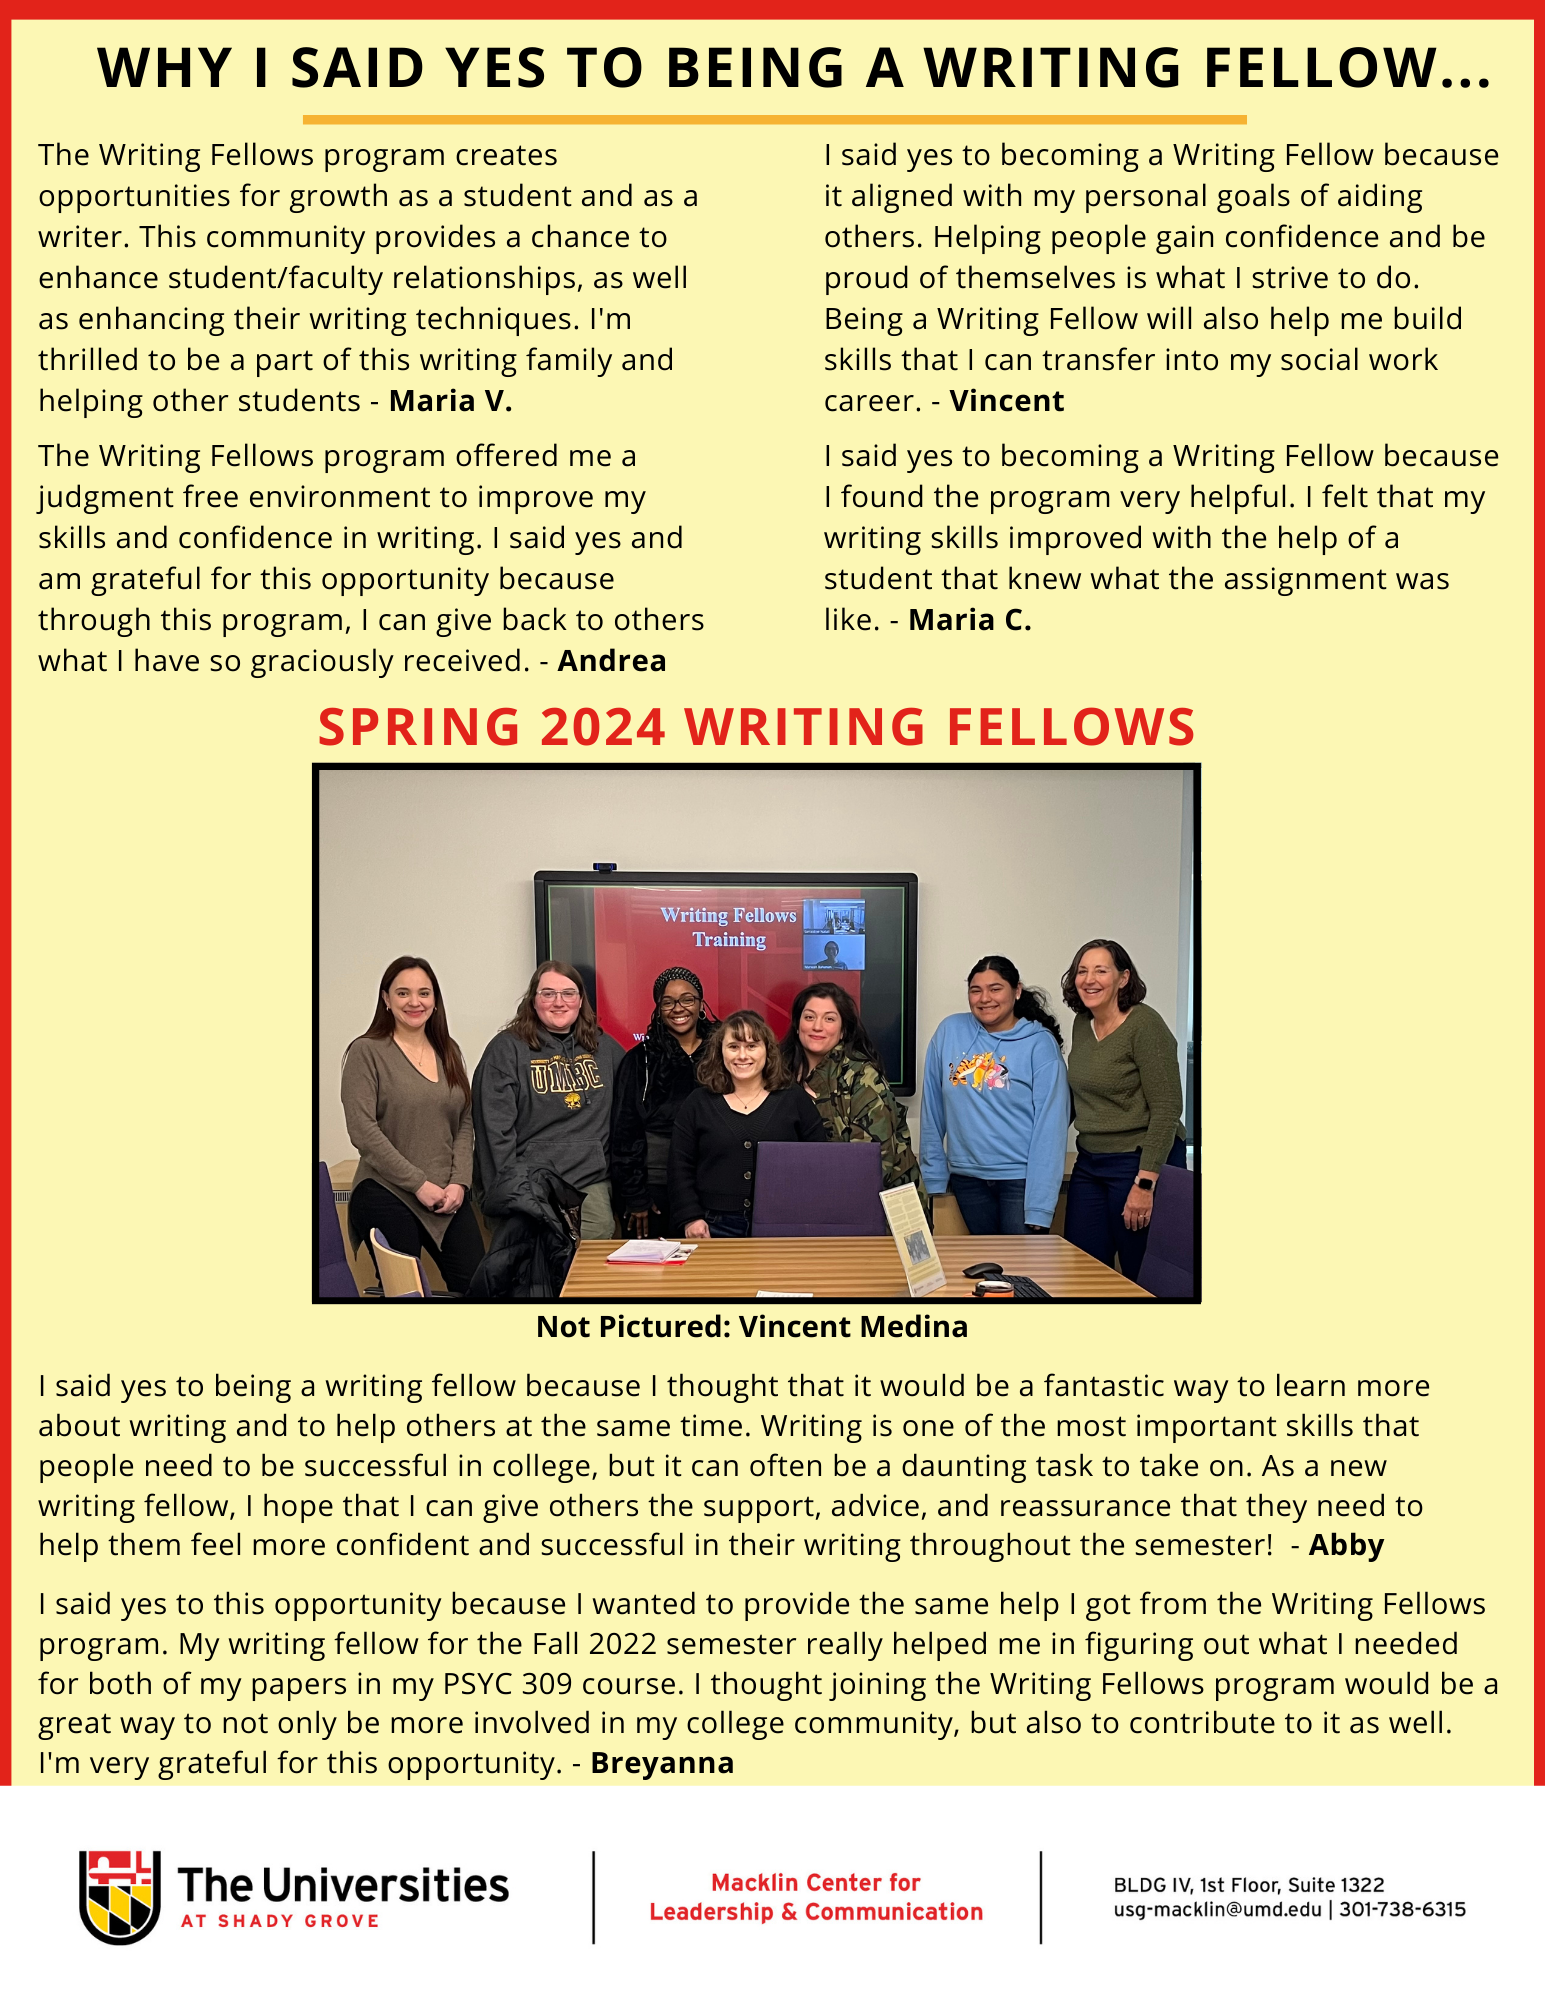 Writing Fellows Flyer Spring 2024